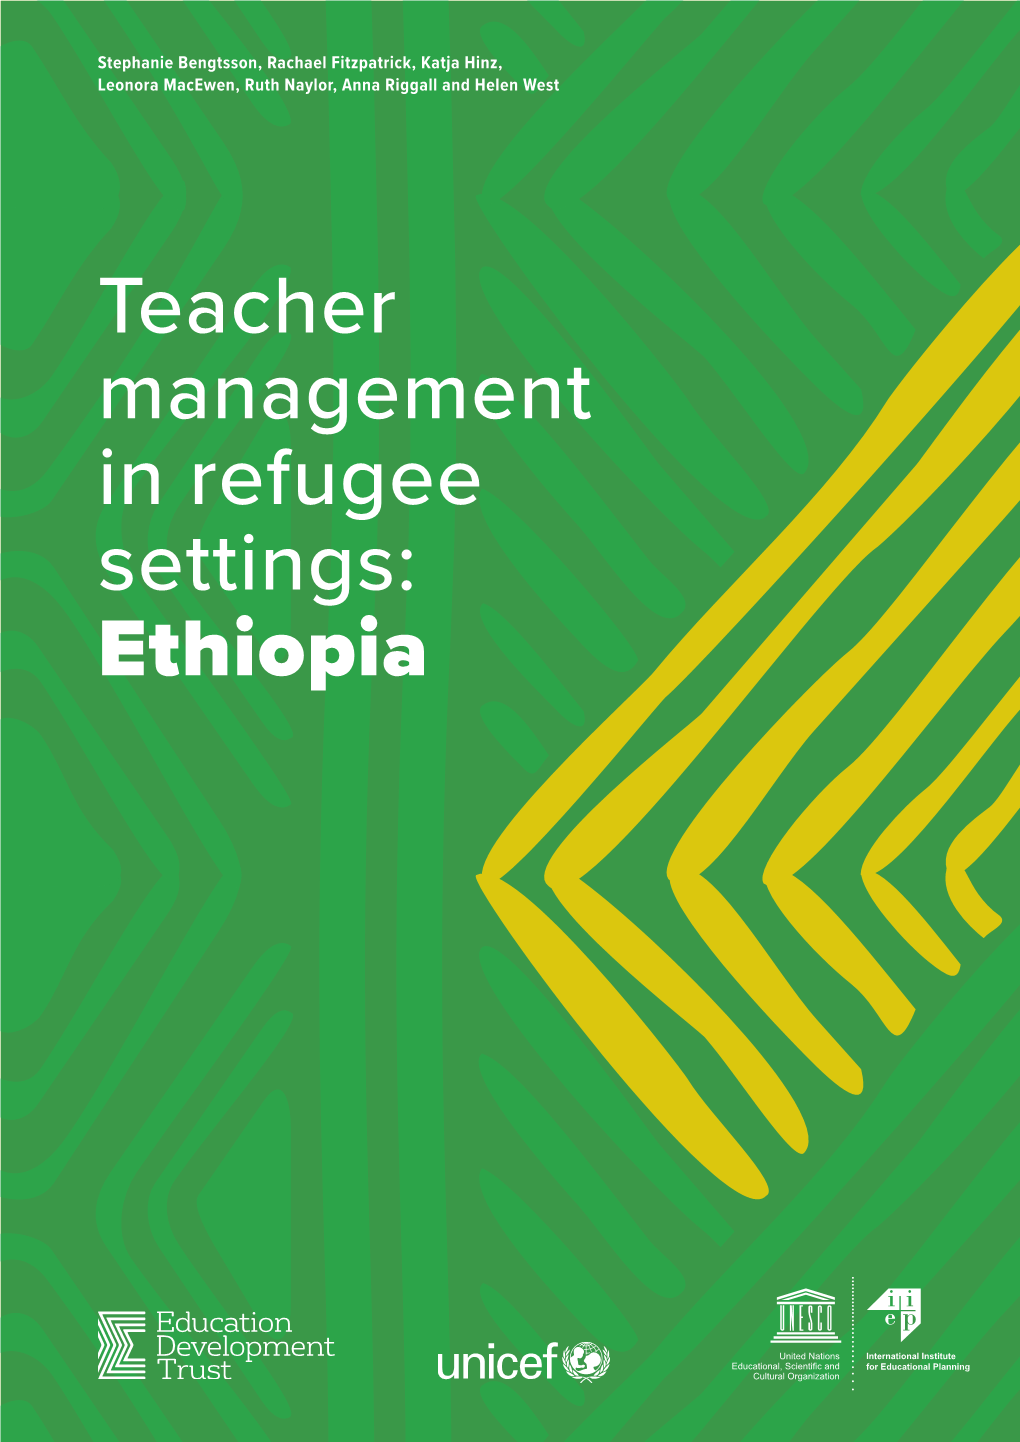 Ethiopia © Copyright Education Development Trust 2020